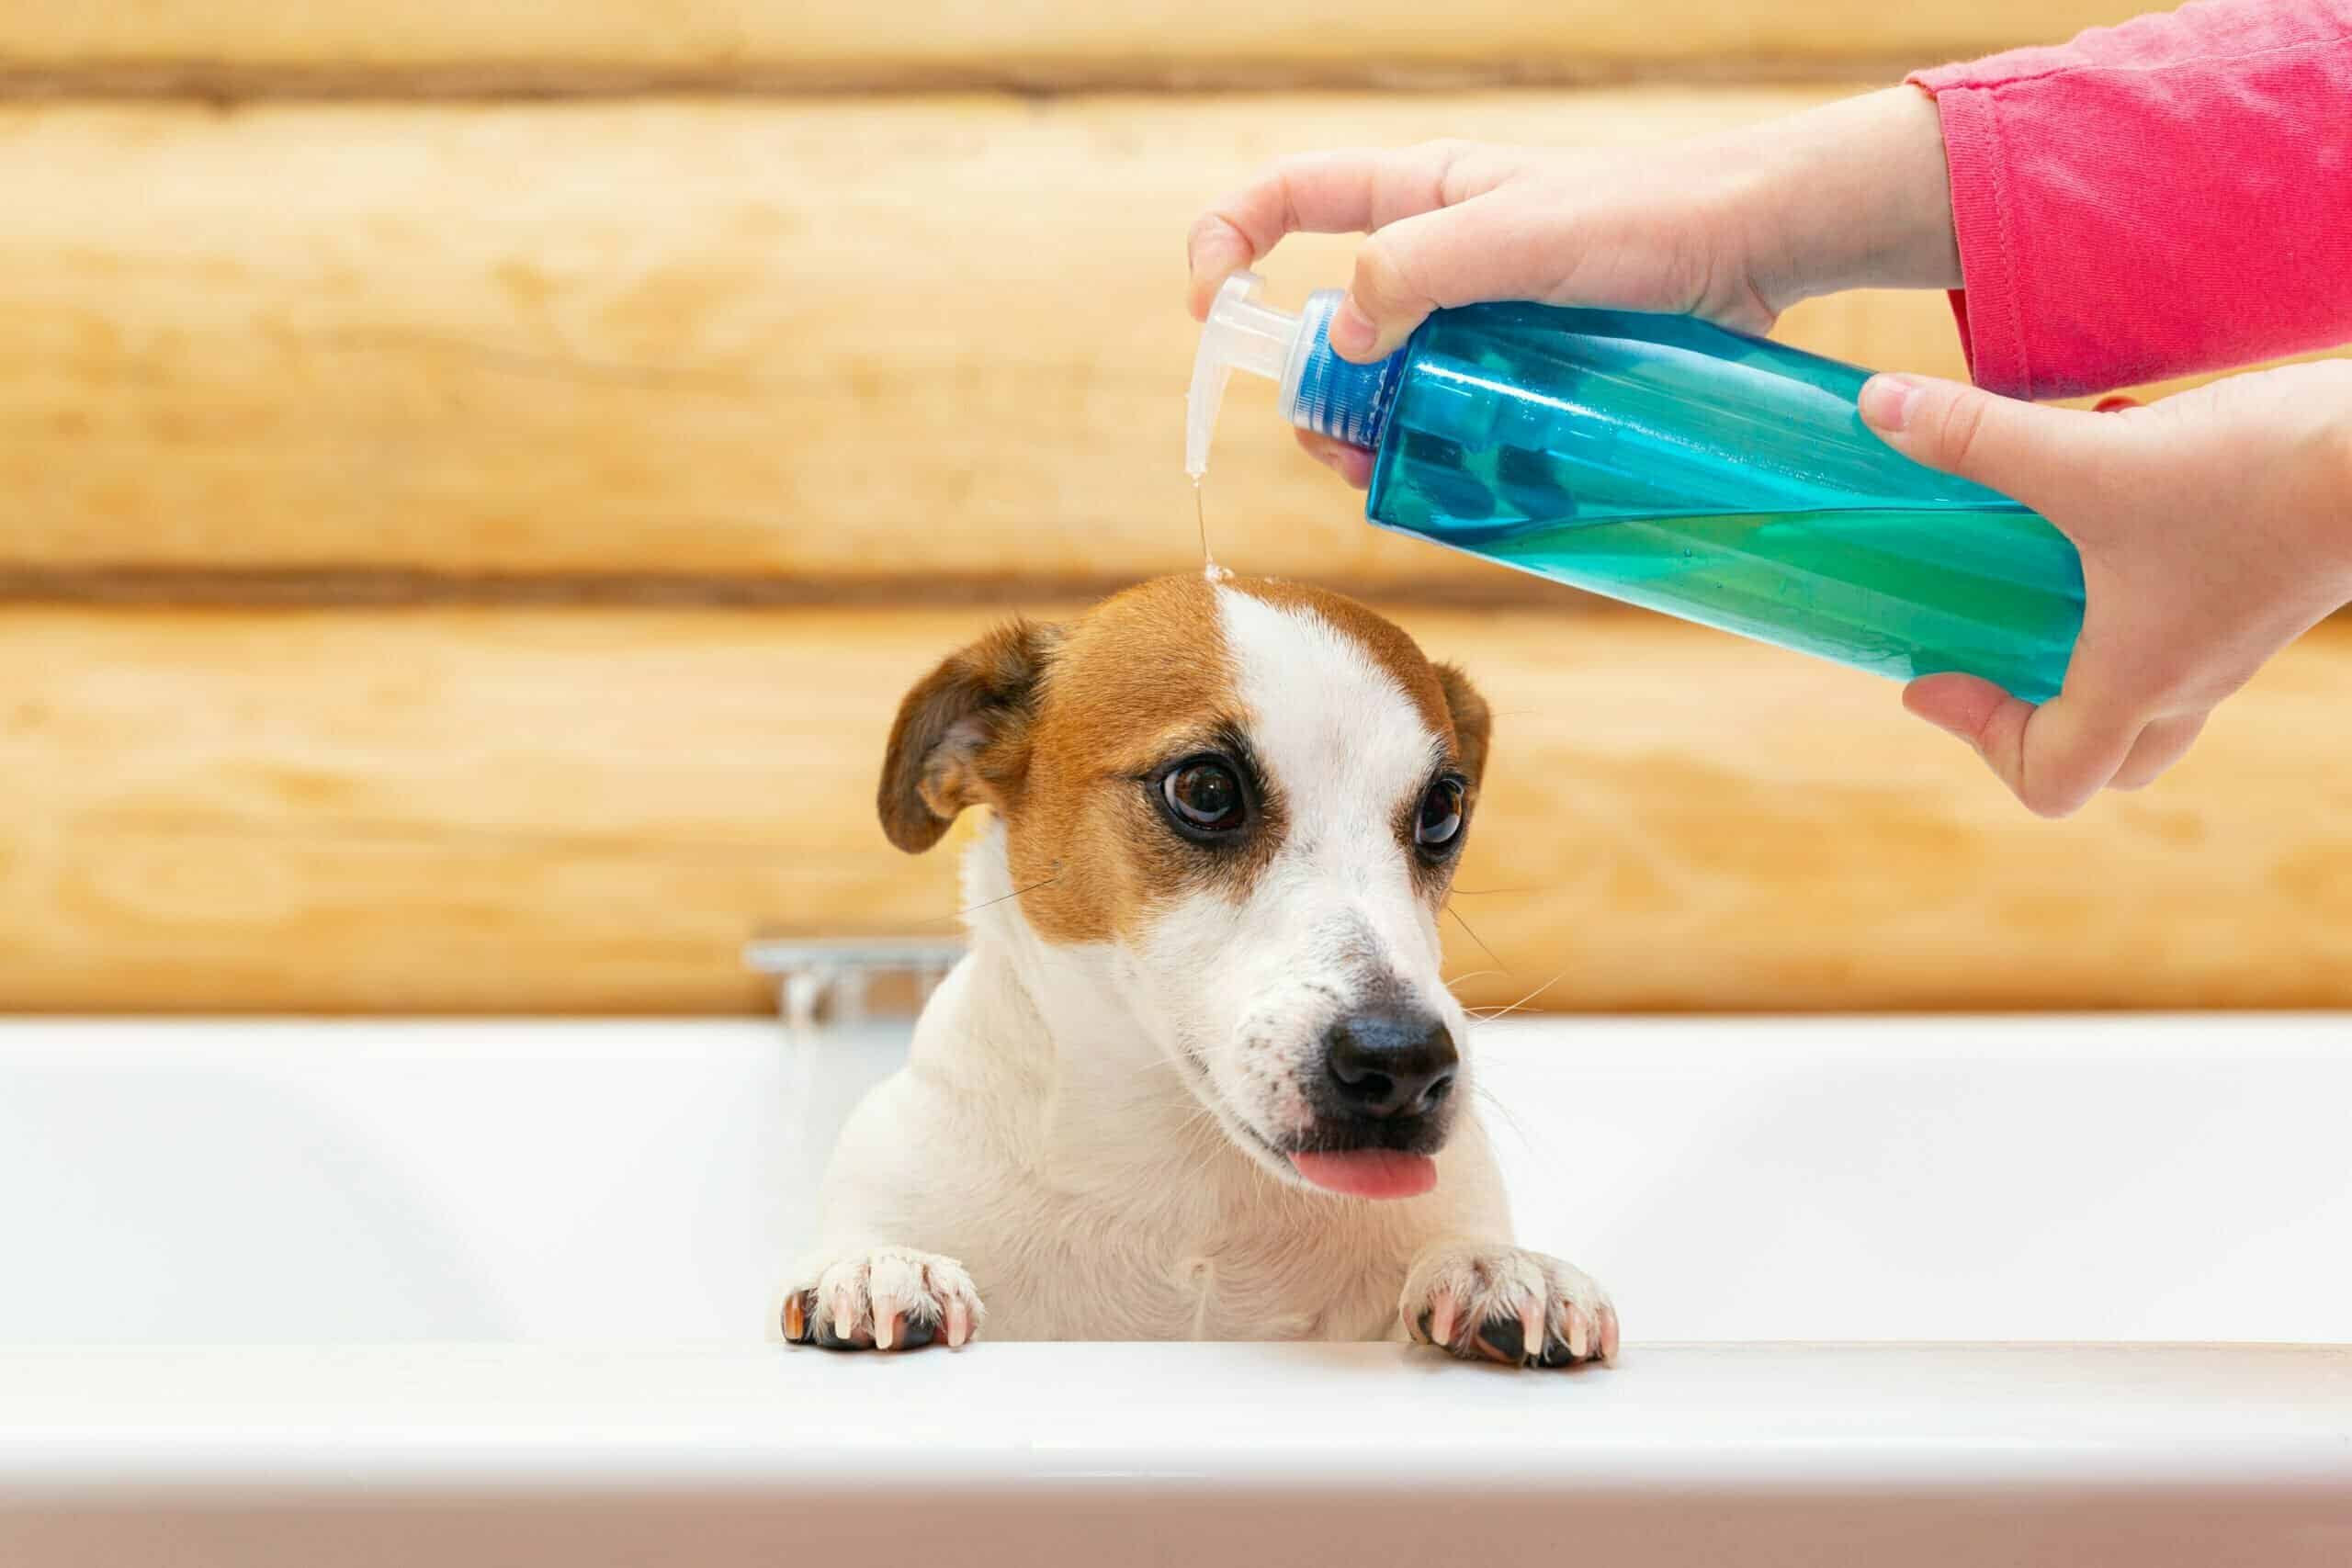 Dog shampoo dilution system